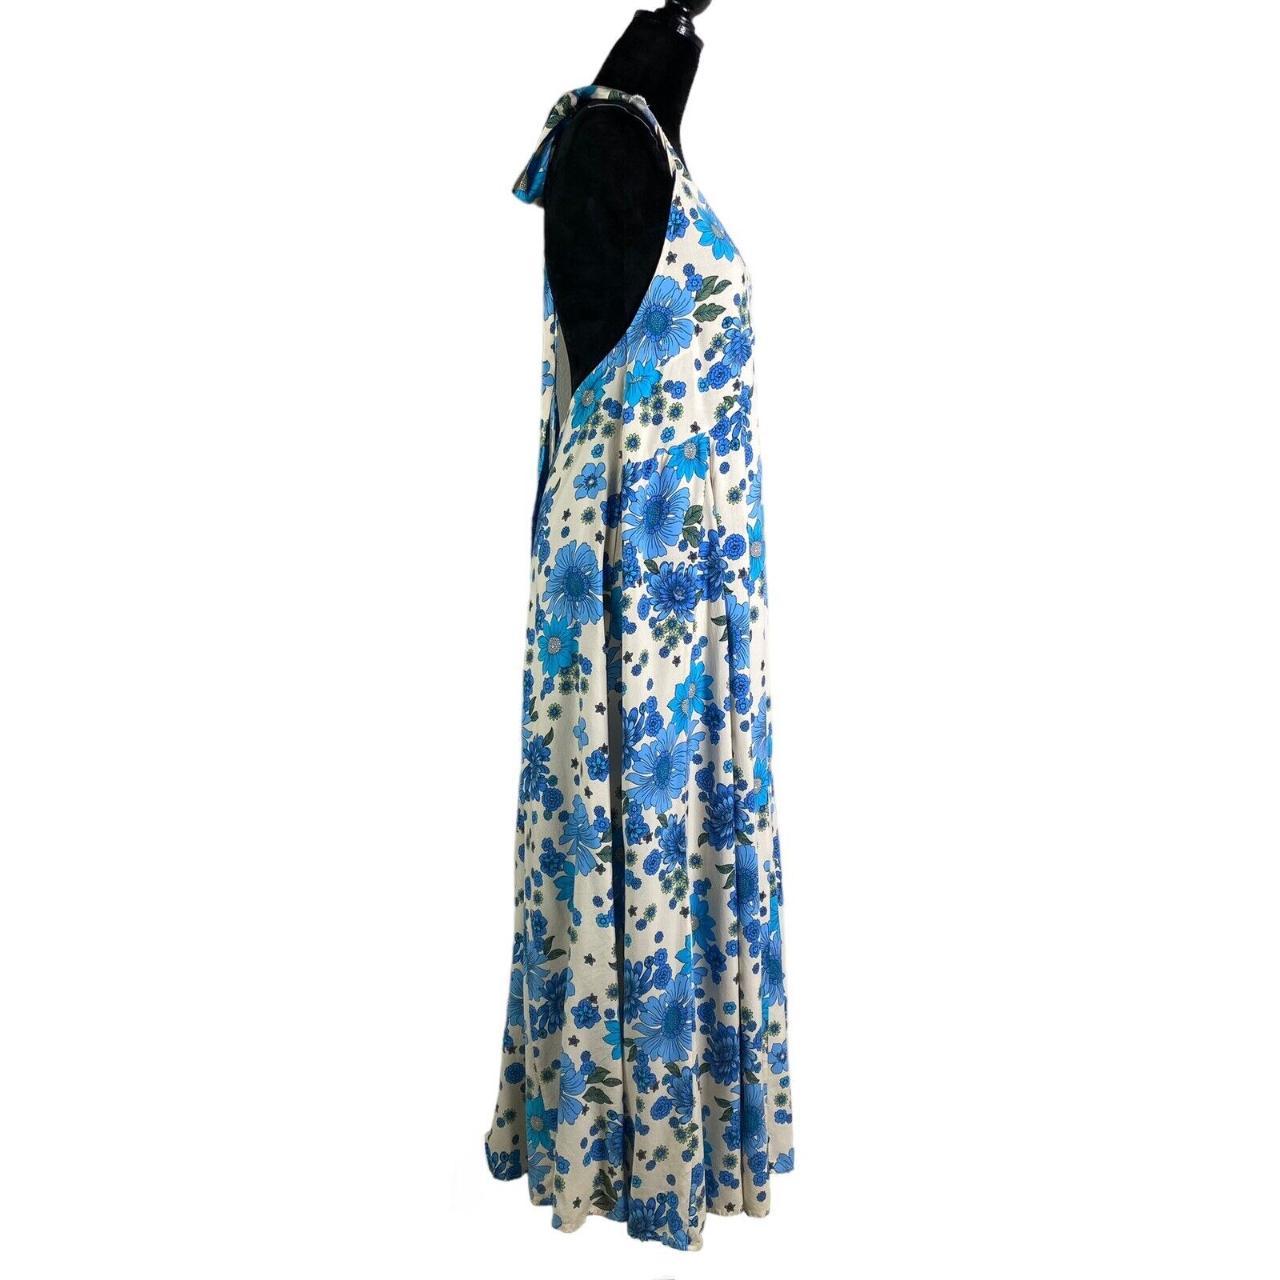 Aakaa Leah Halter Dress Blue Floral Maxi Dress Size... - Depop